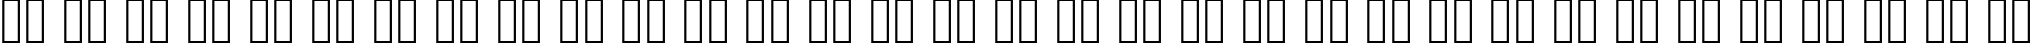 Пример написания русского алфавита шрифтом marinto